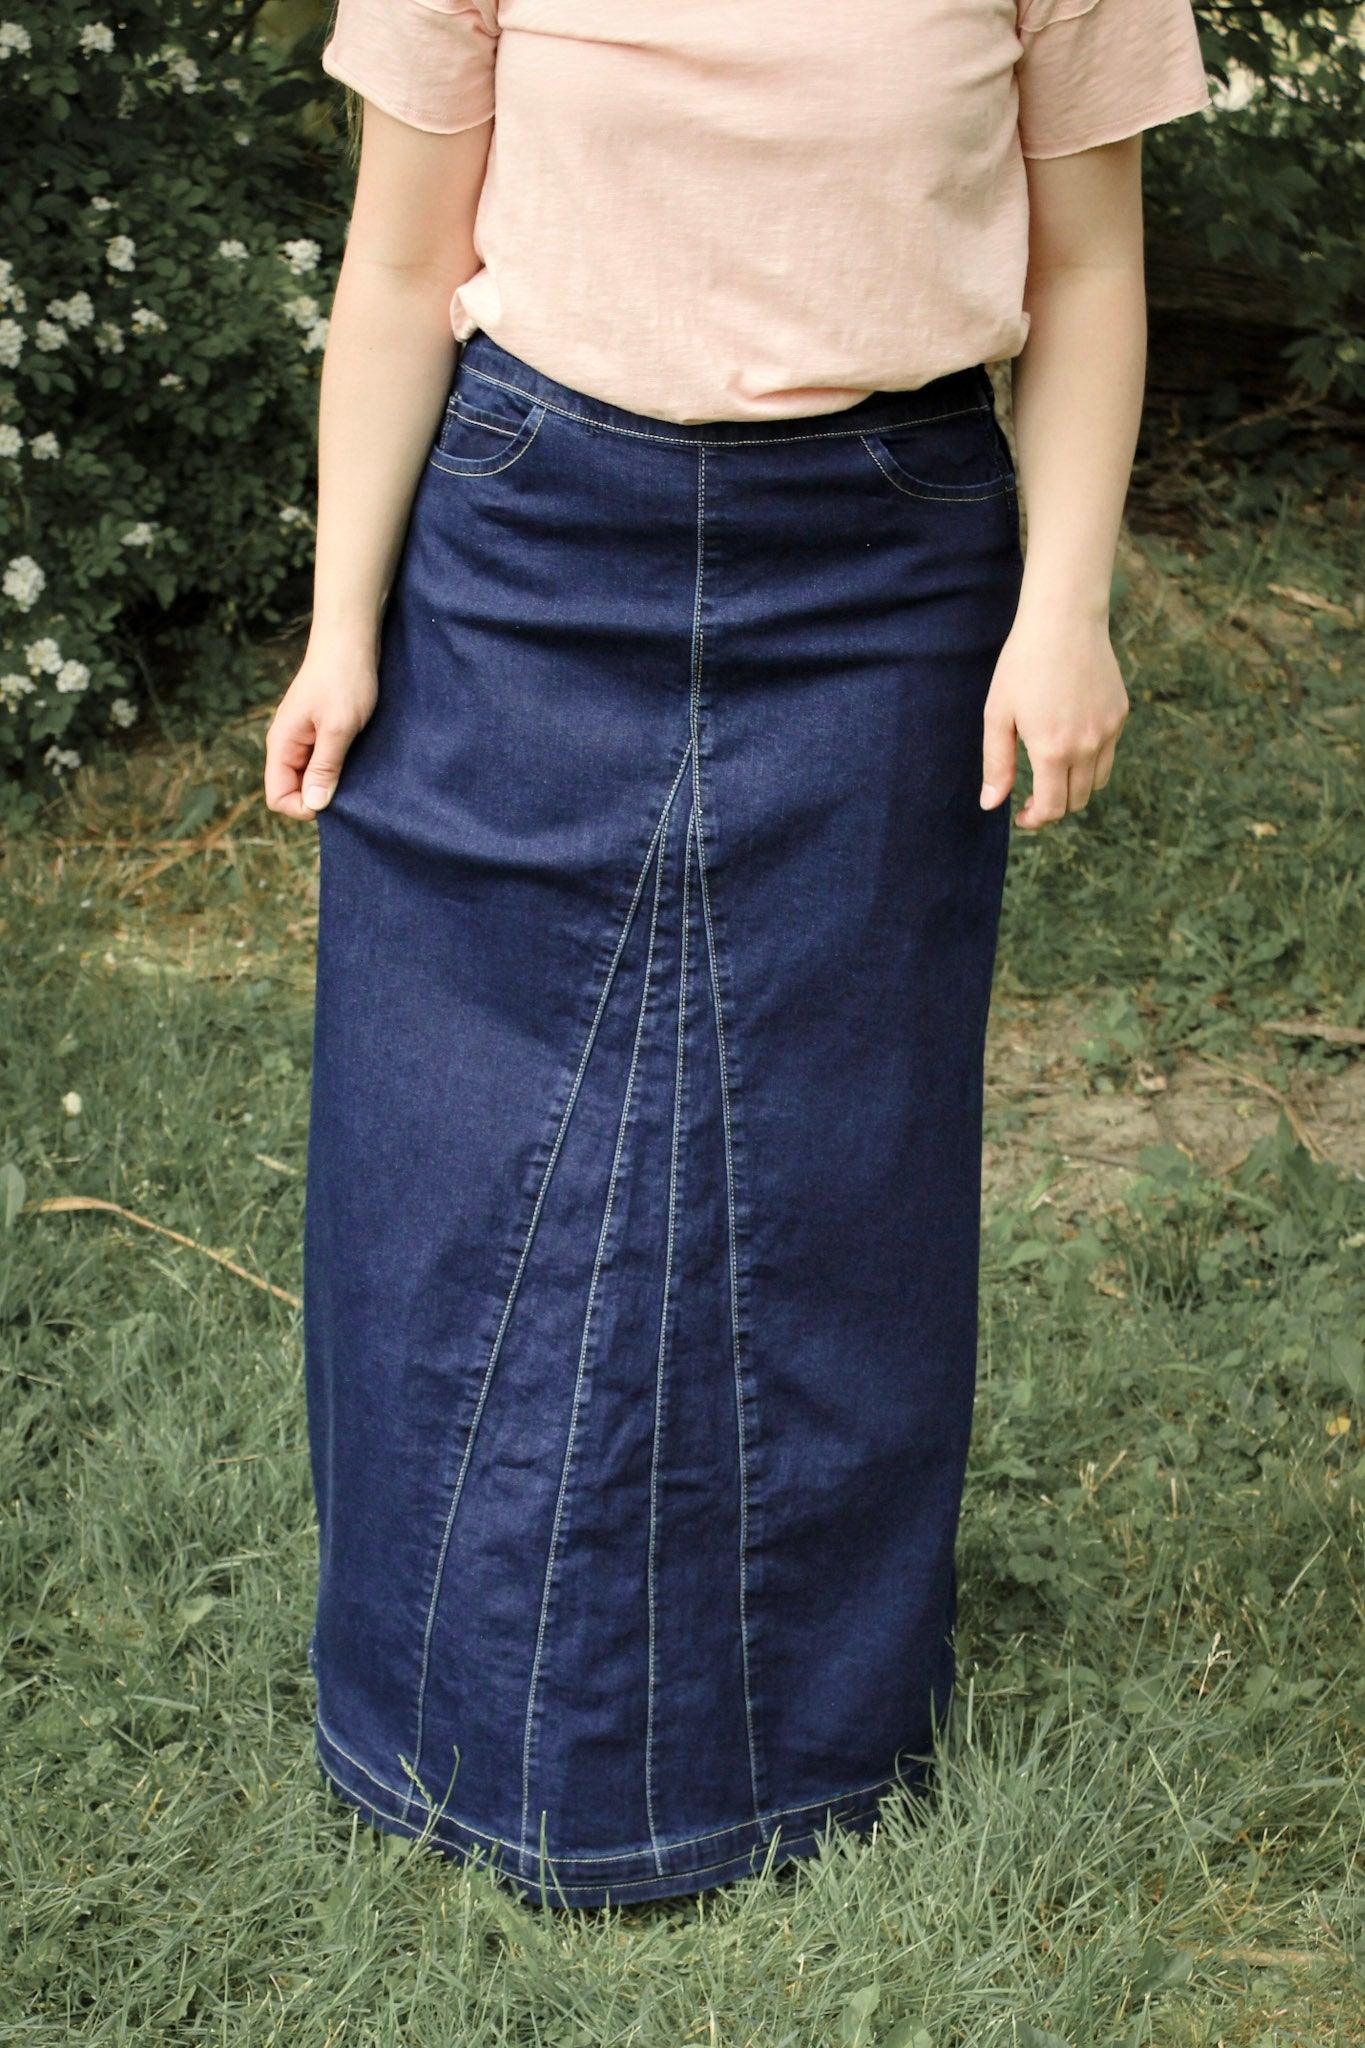 Modest denim skirts for Effortless Style缩略图